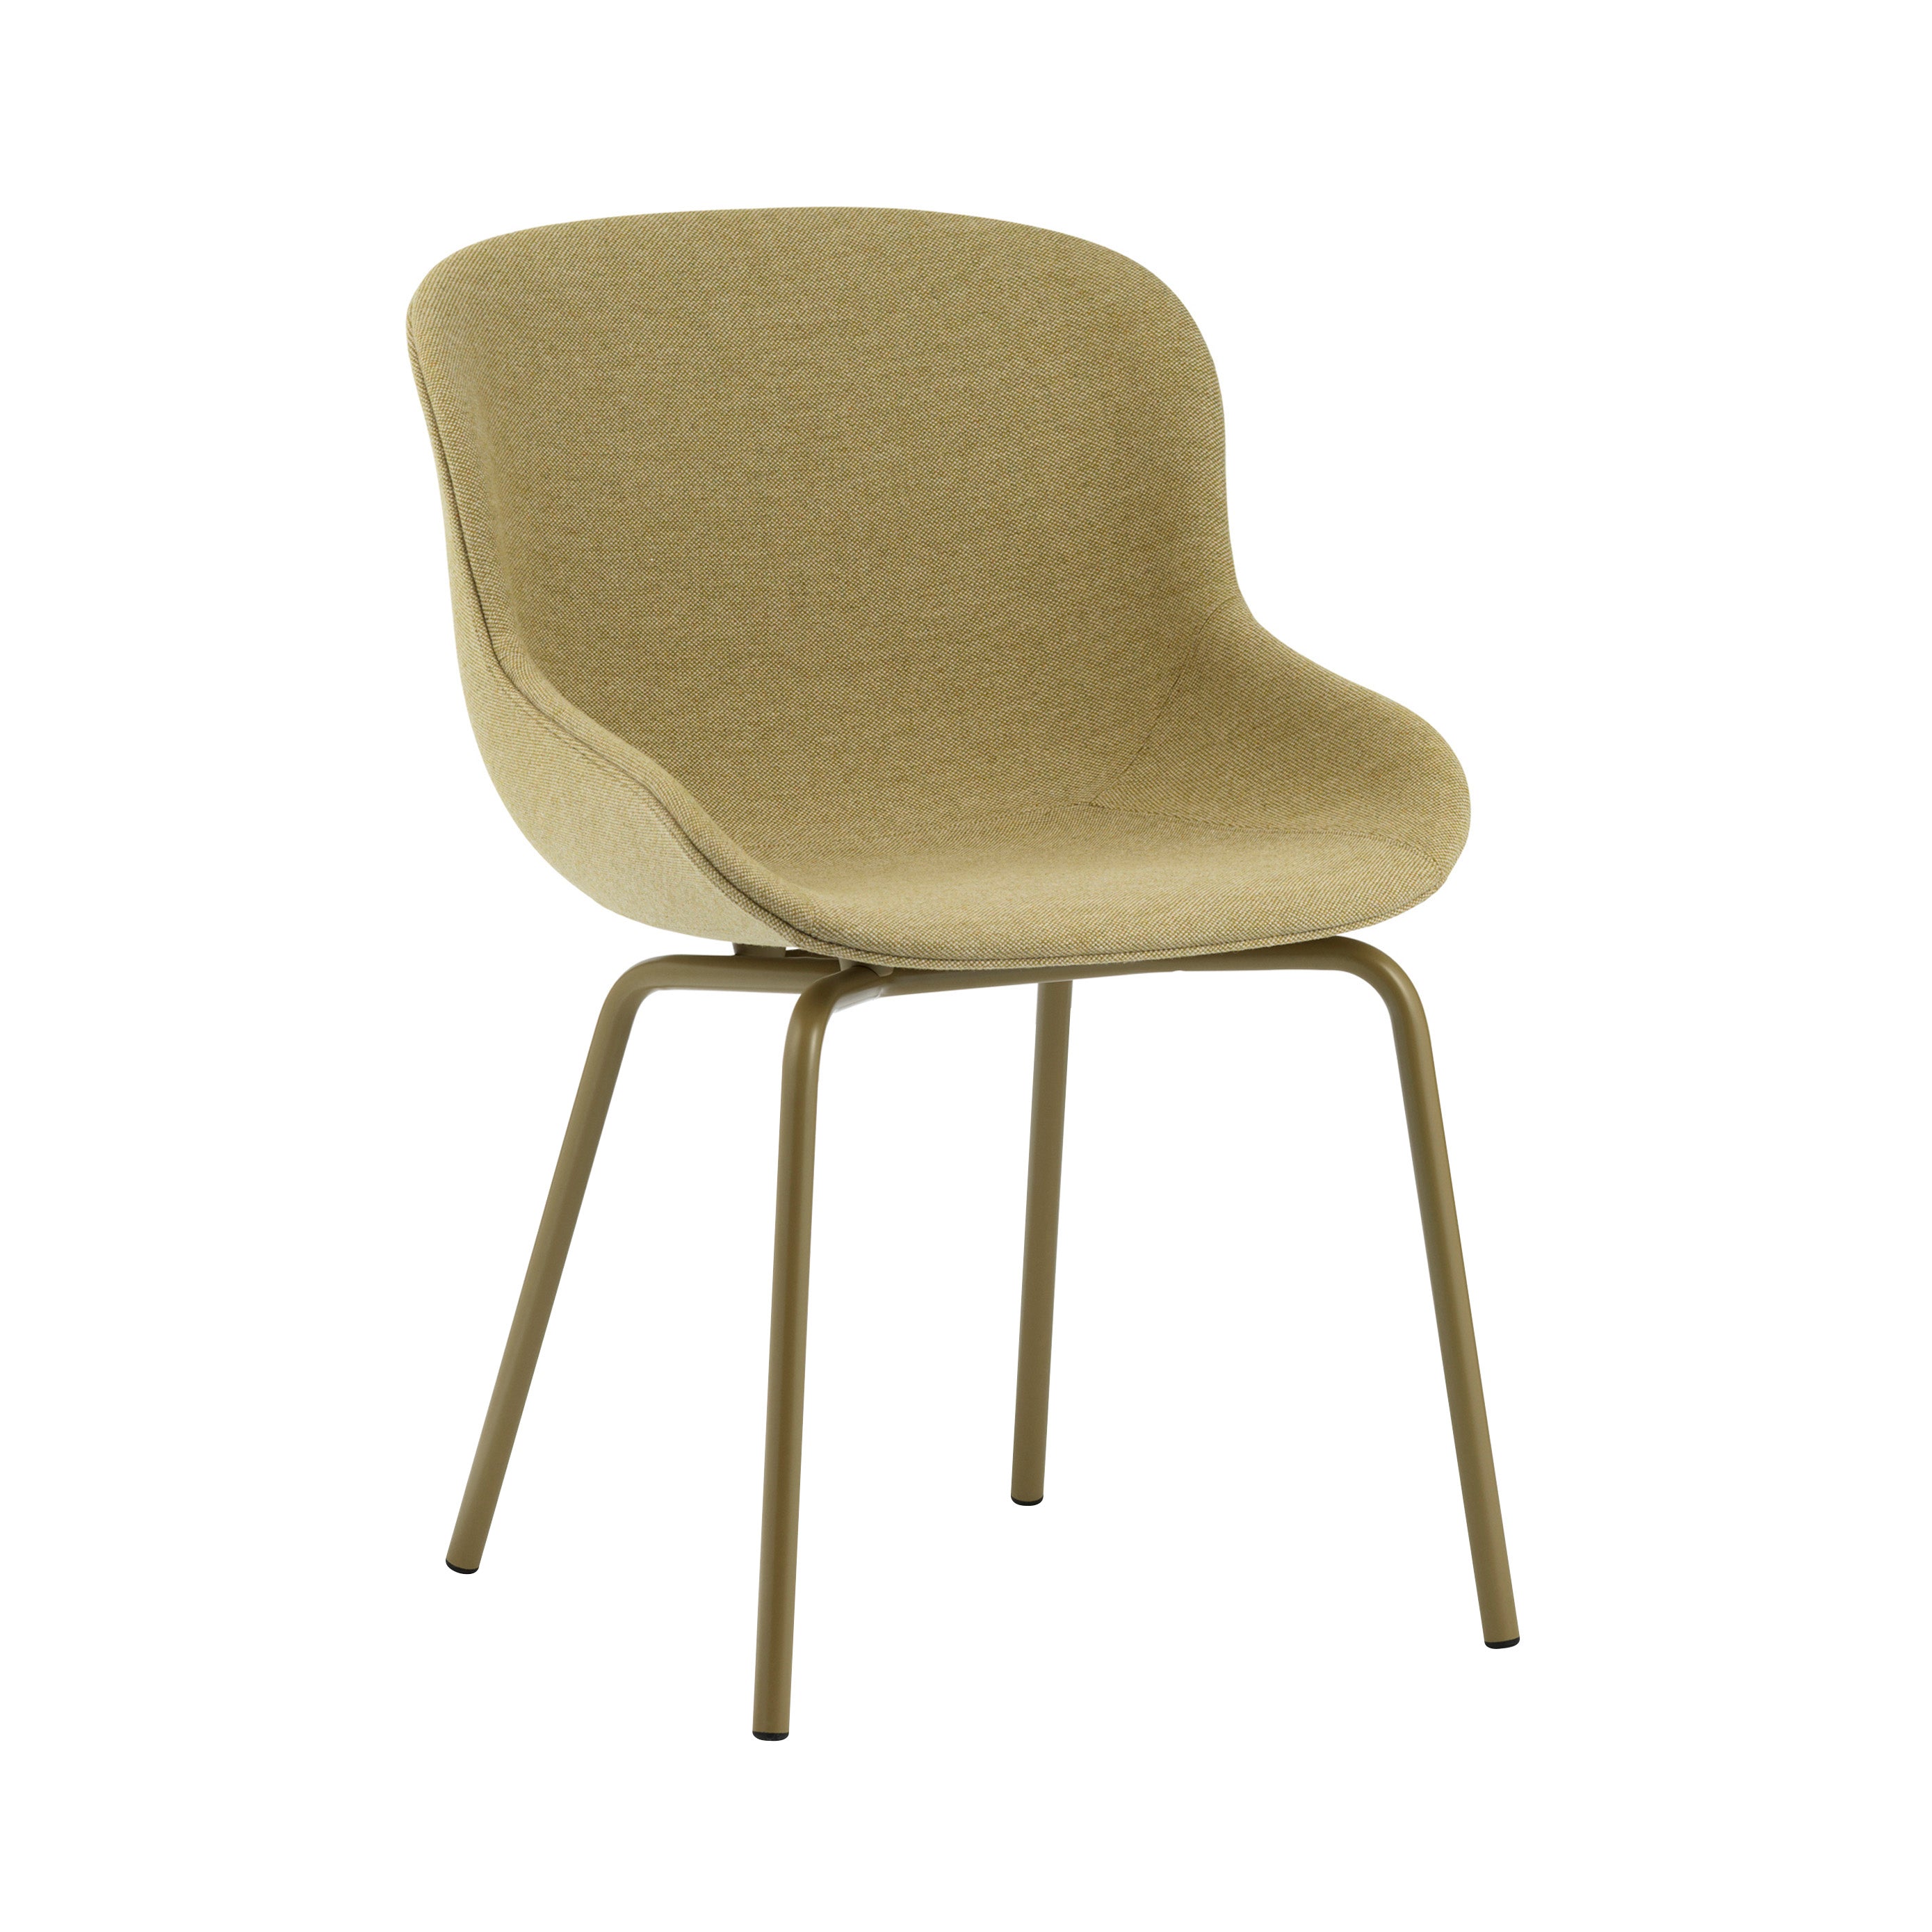 Hyg Chair: Steel Base + Full Upholstered + Olive